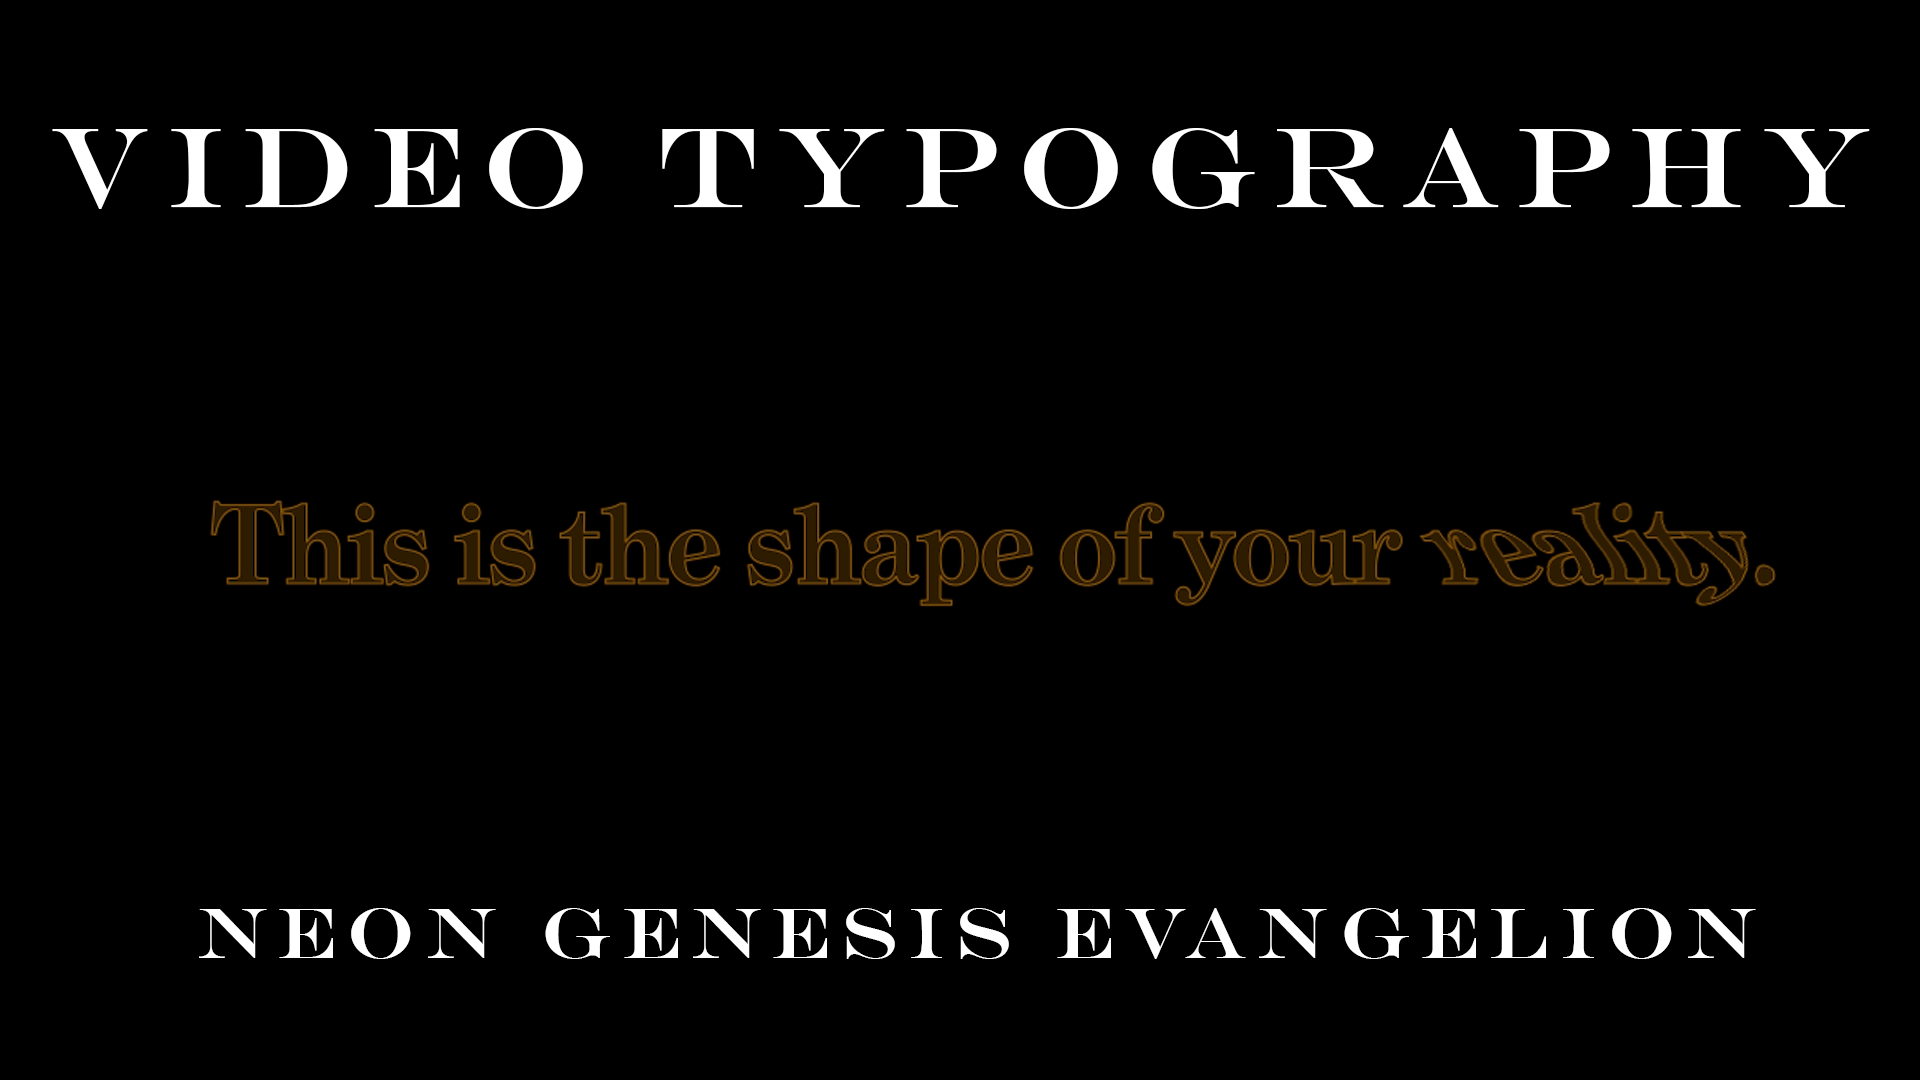 Video Typography